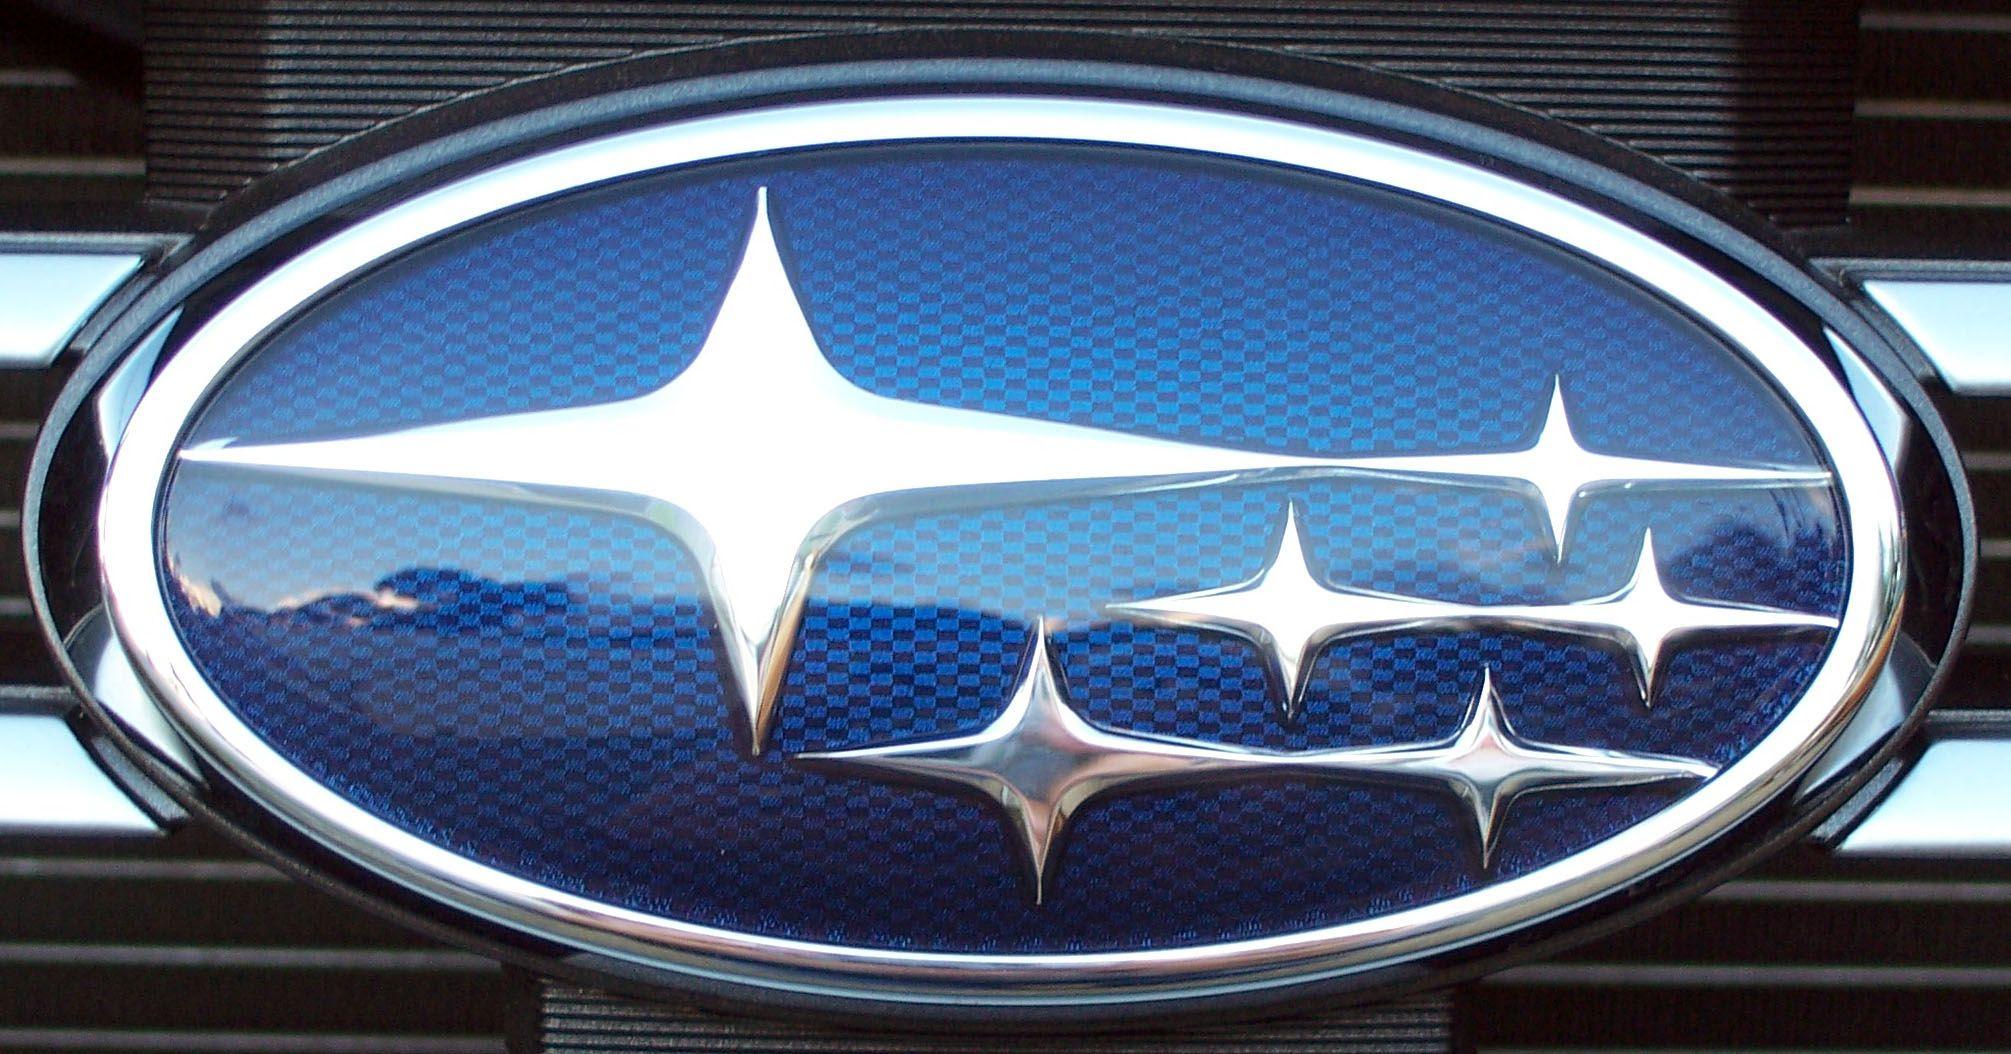 Blue Oval Car Logo - Subaru Logo, Subaru Car Symbol Meaning and History | Car Brand Names.com